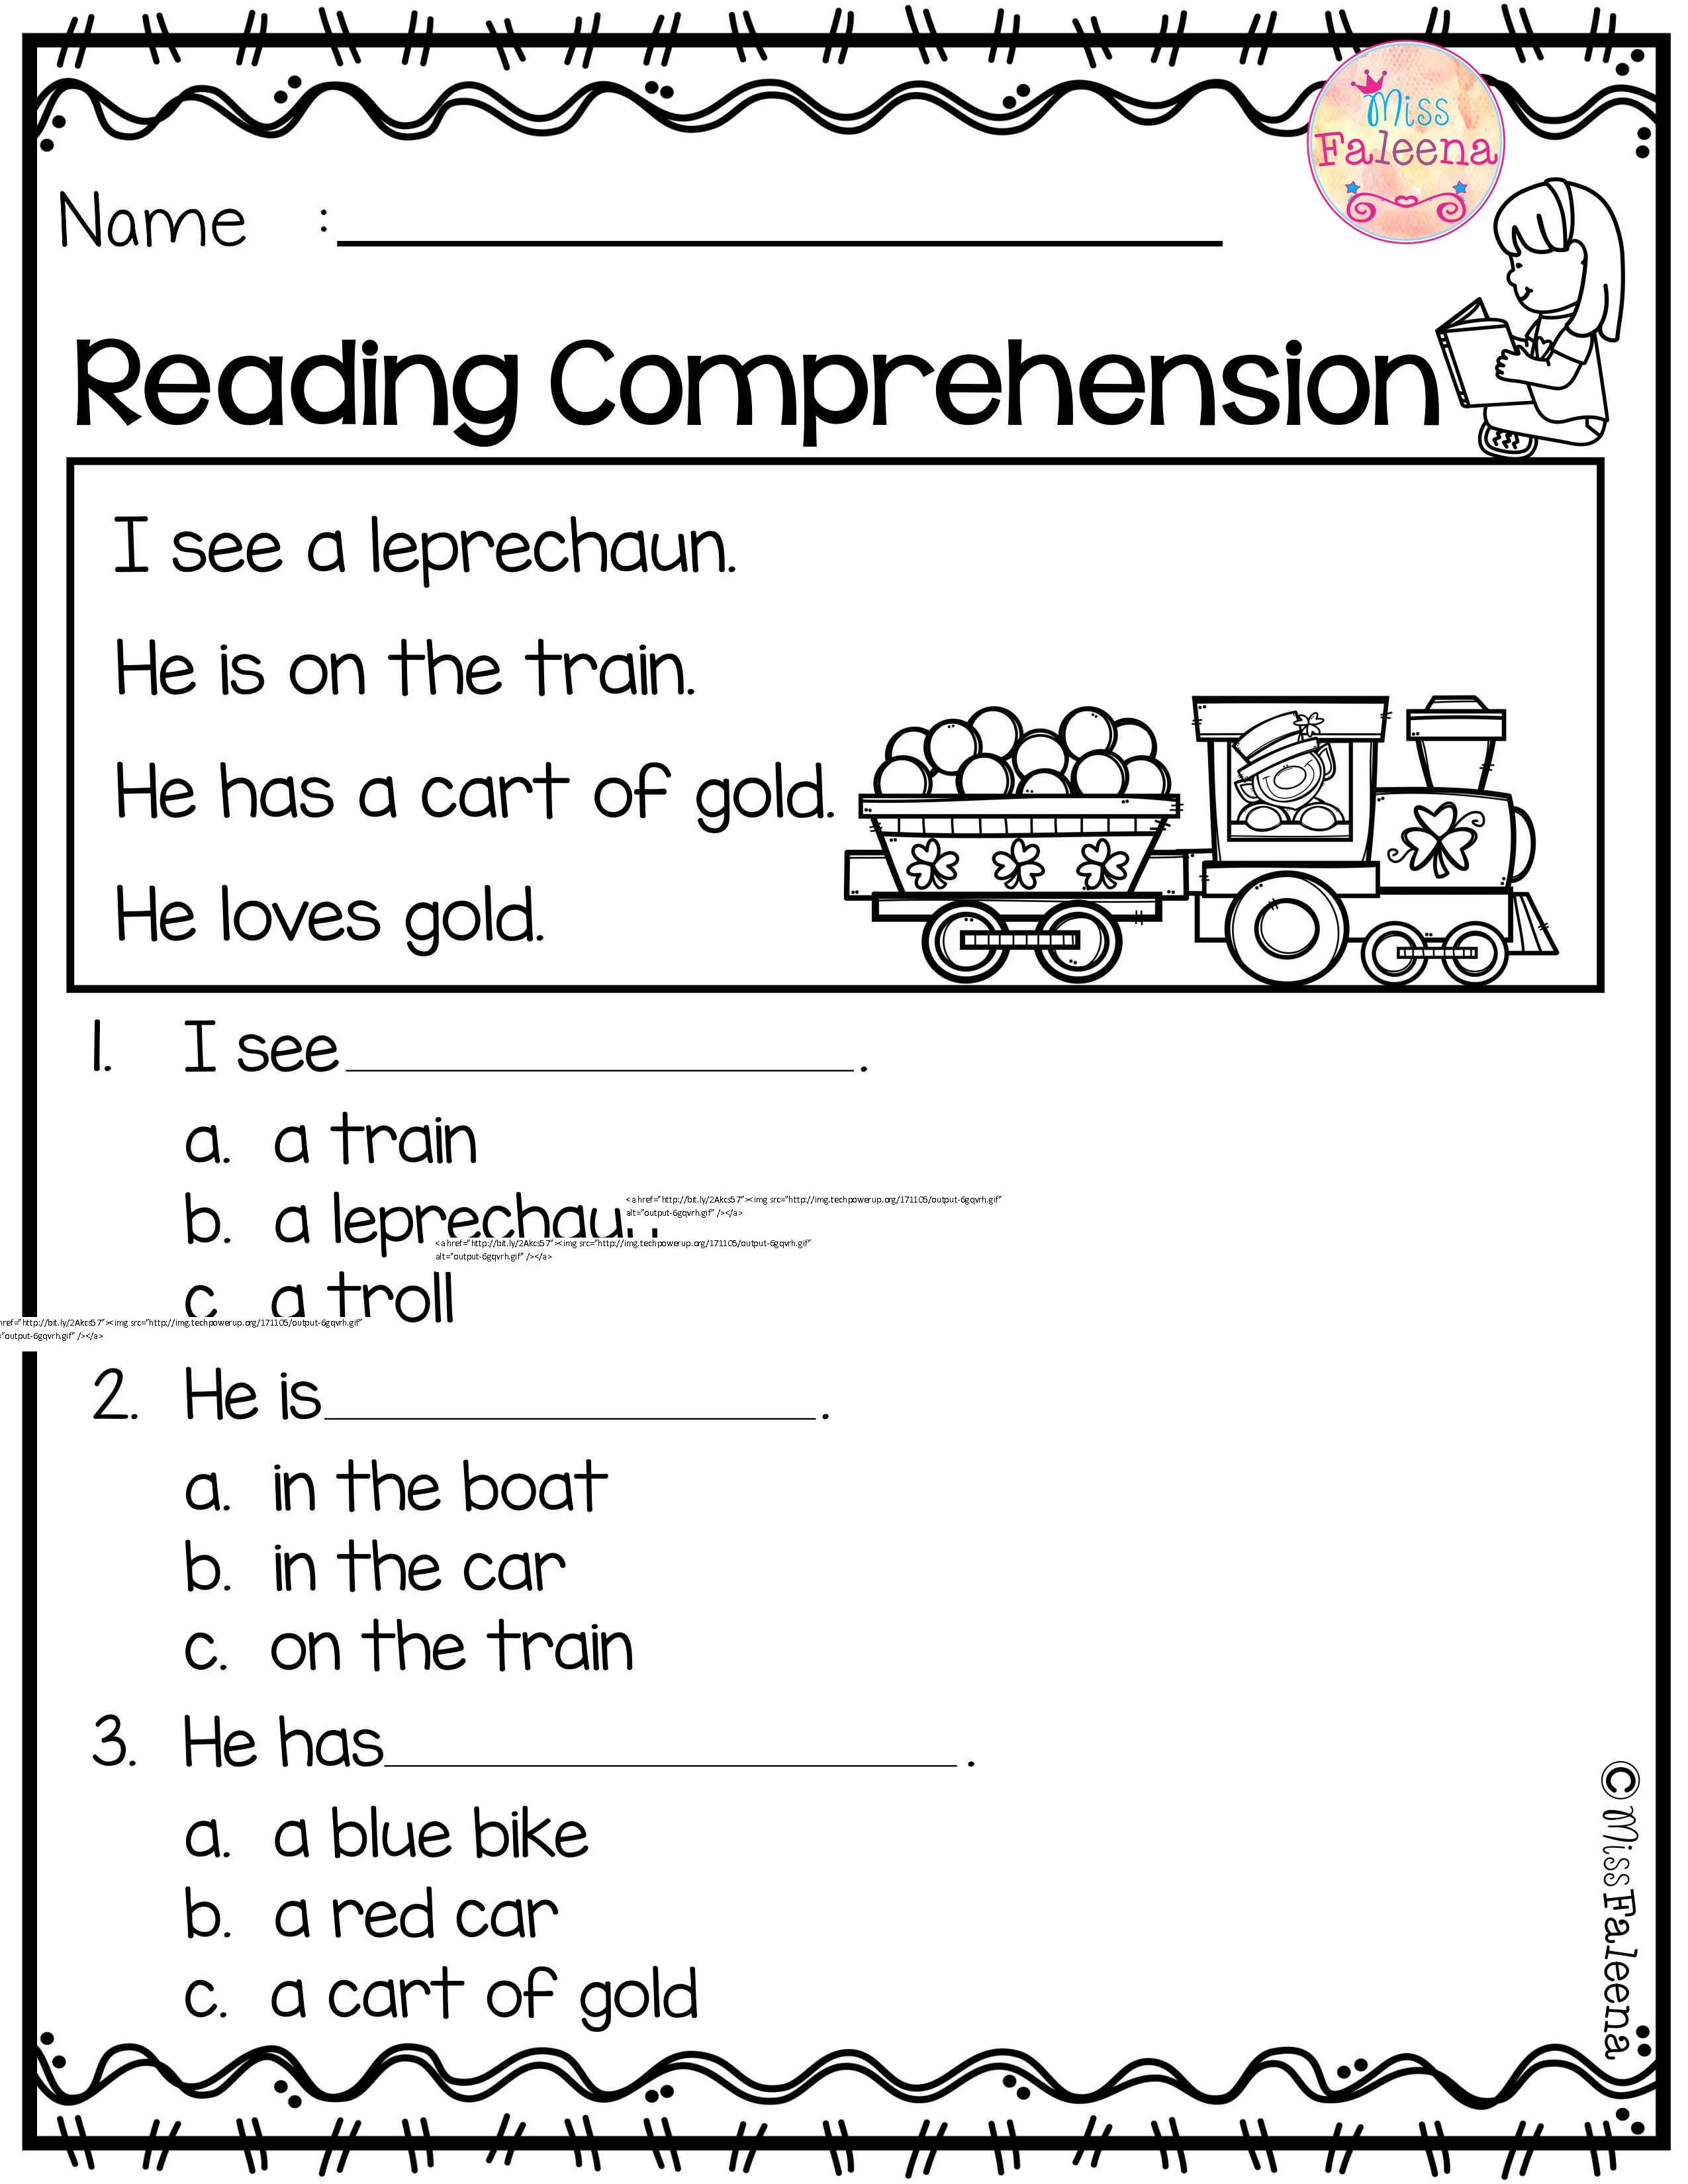 Image Result For Kg2 English Worksheets Plane 1 Reading Kindergarten Reading Printable